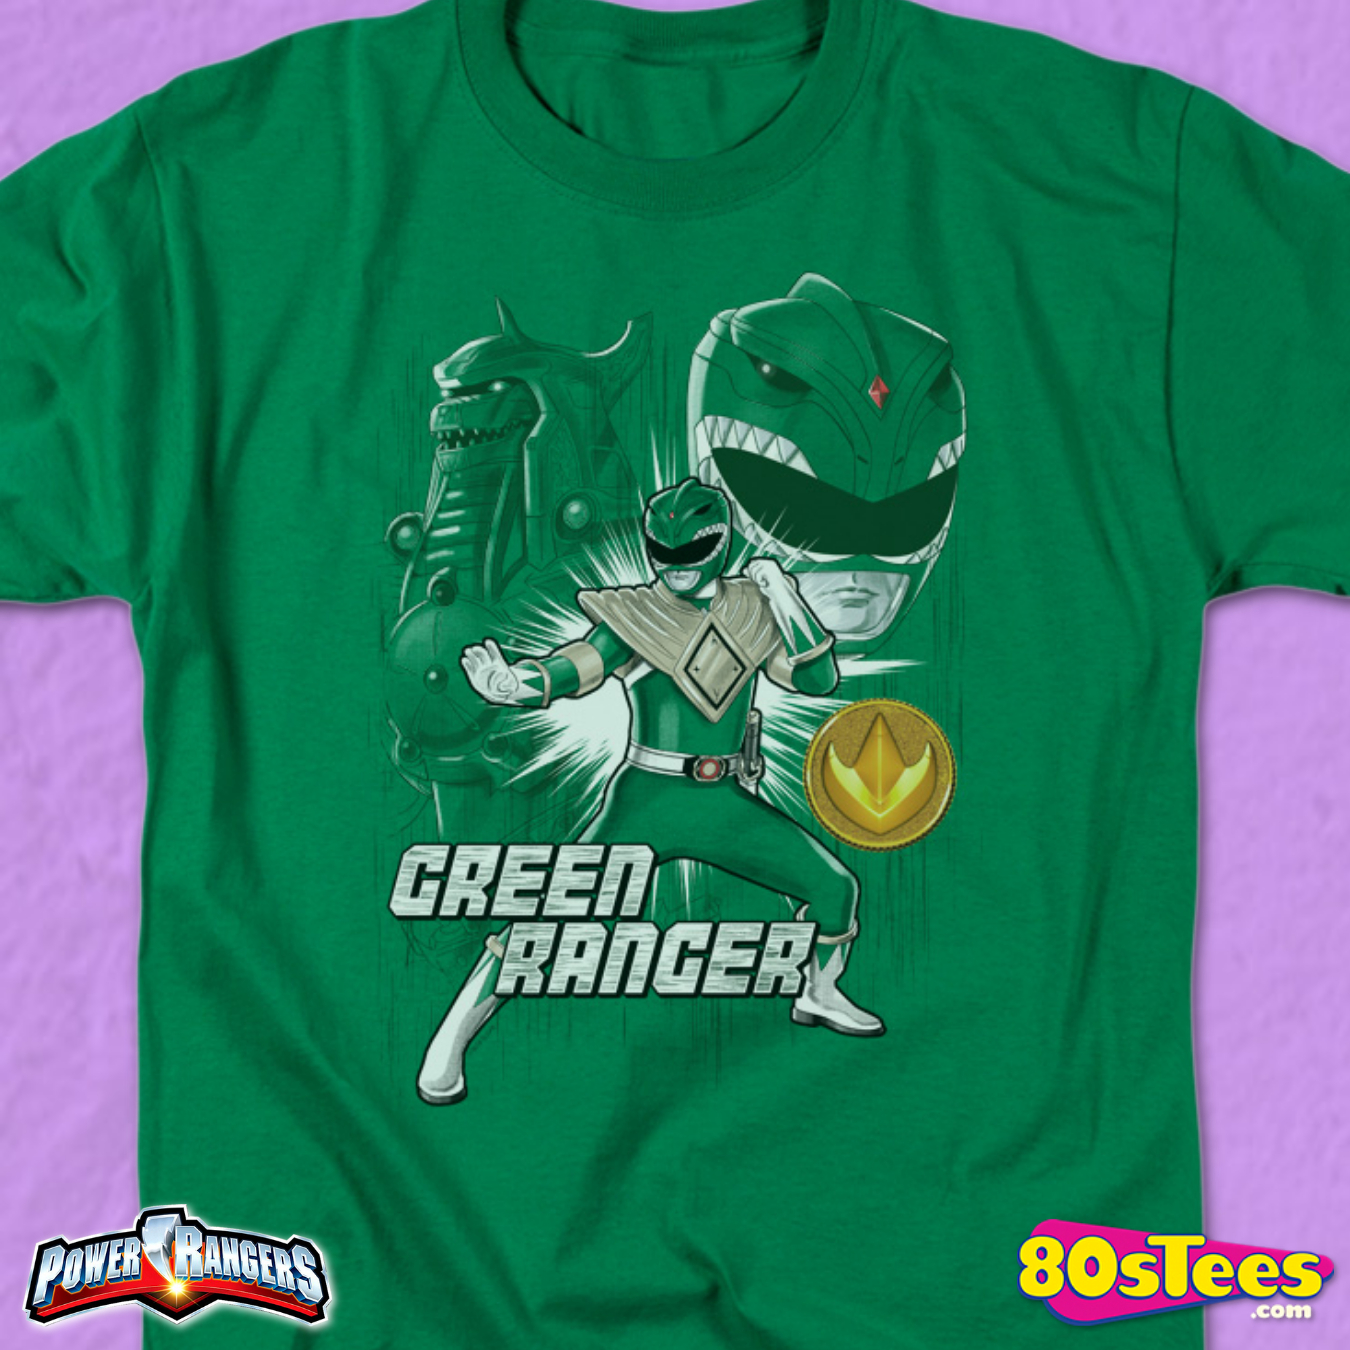 green power ranger shirt